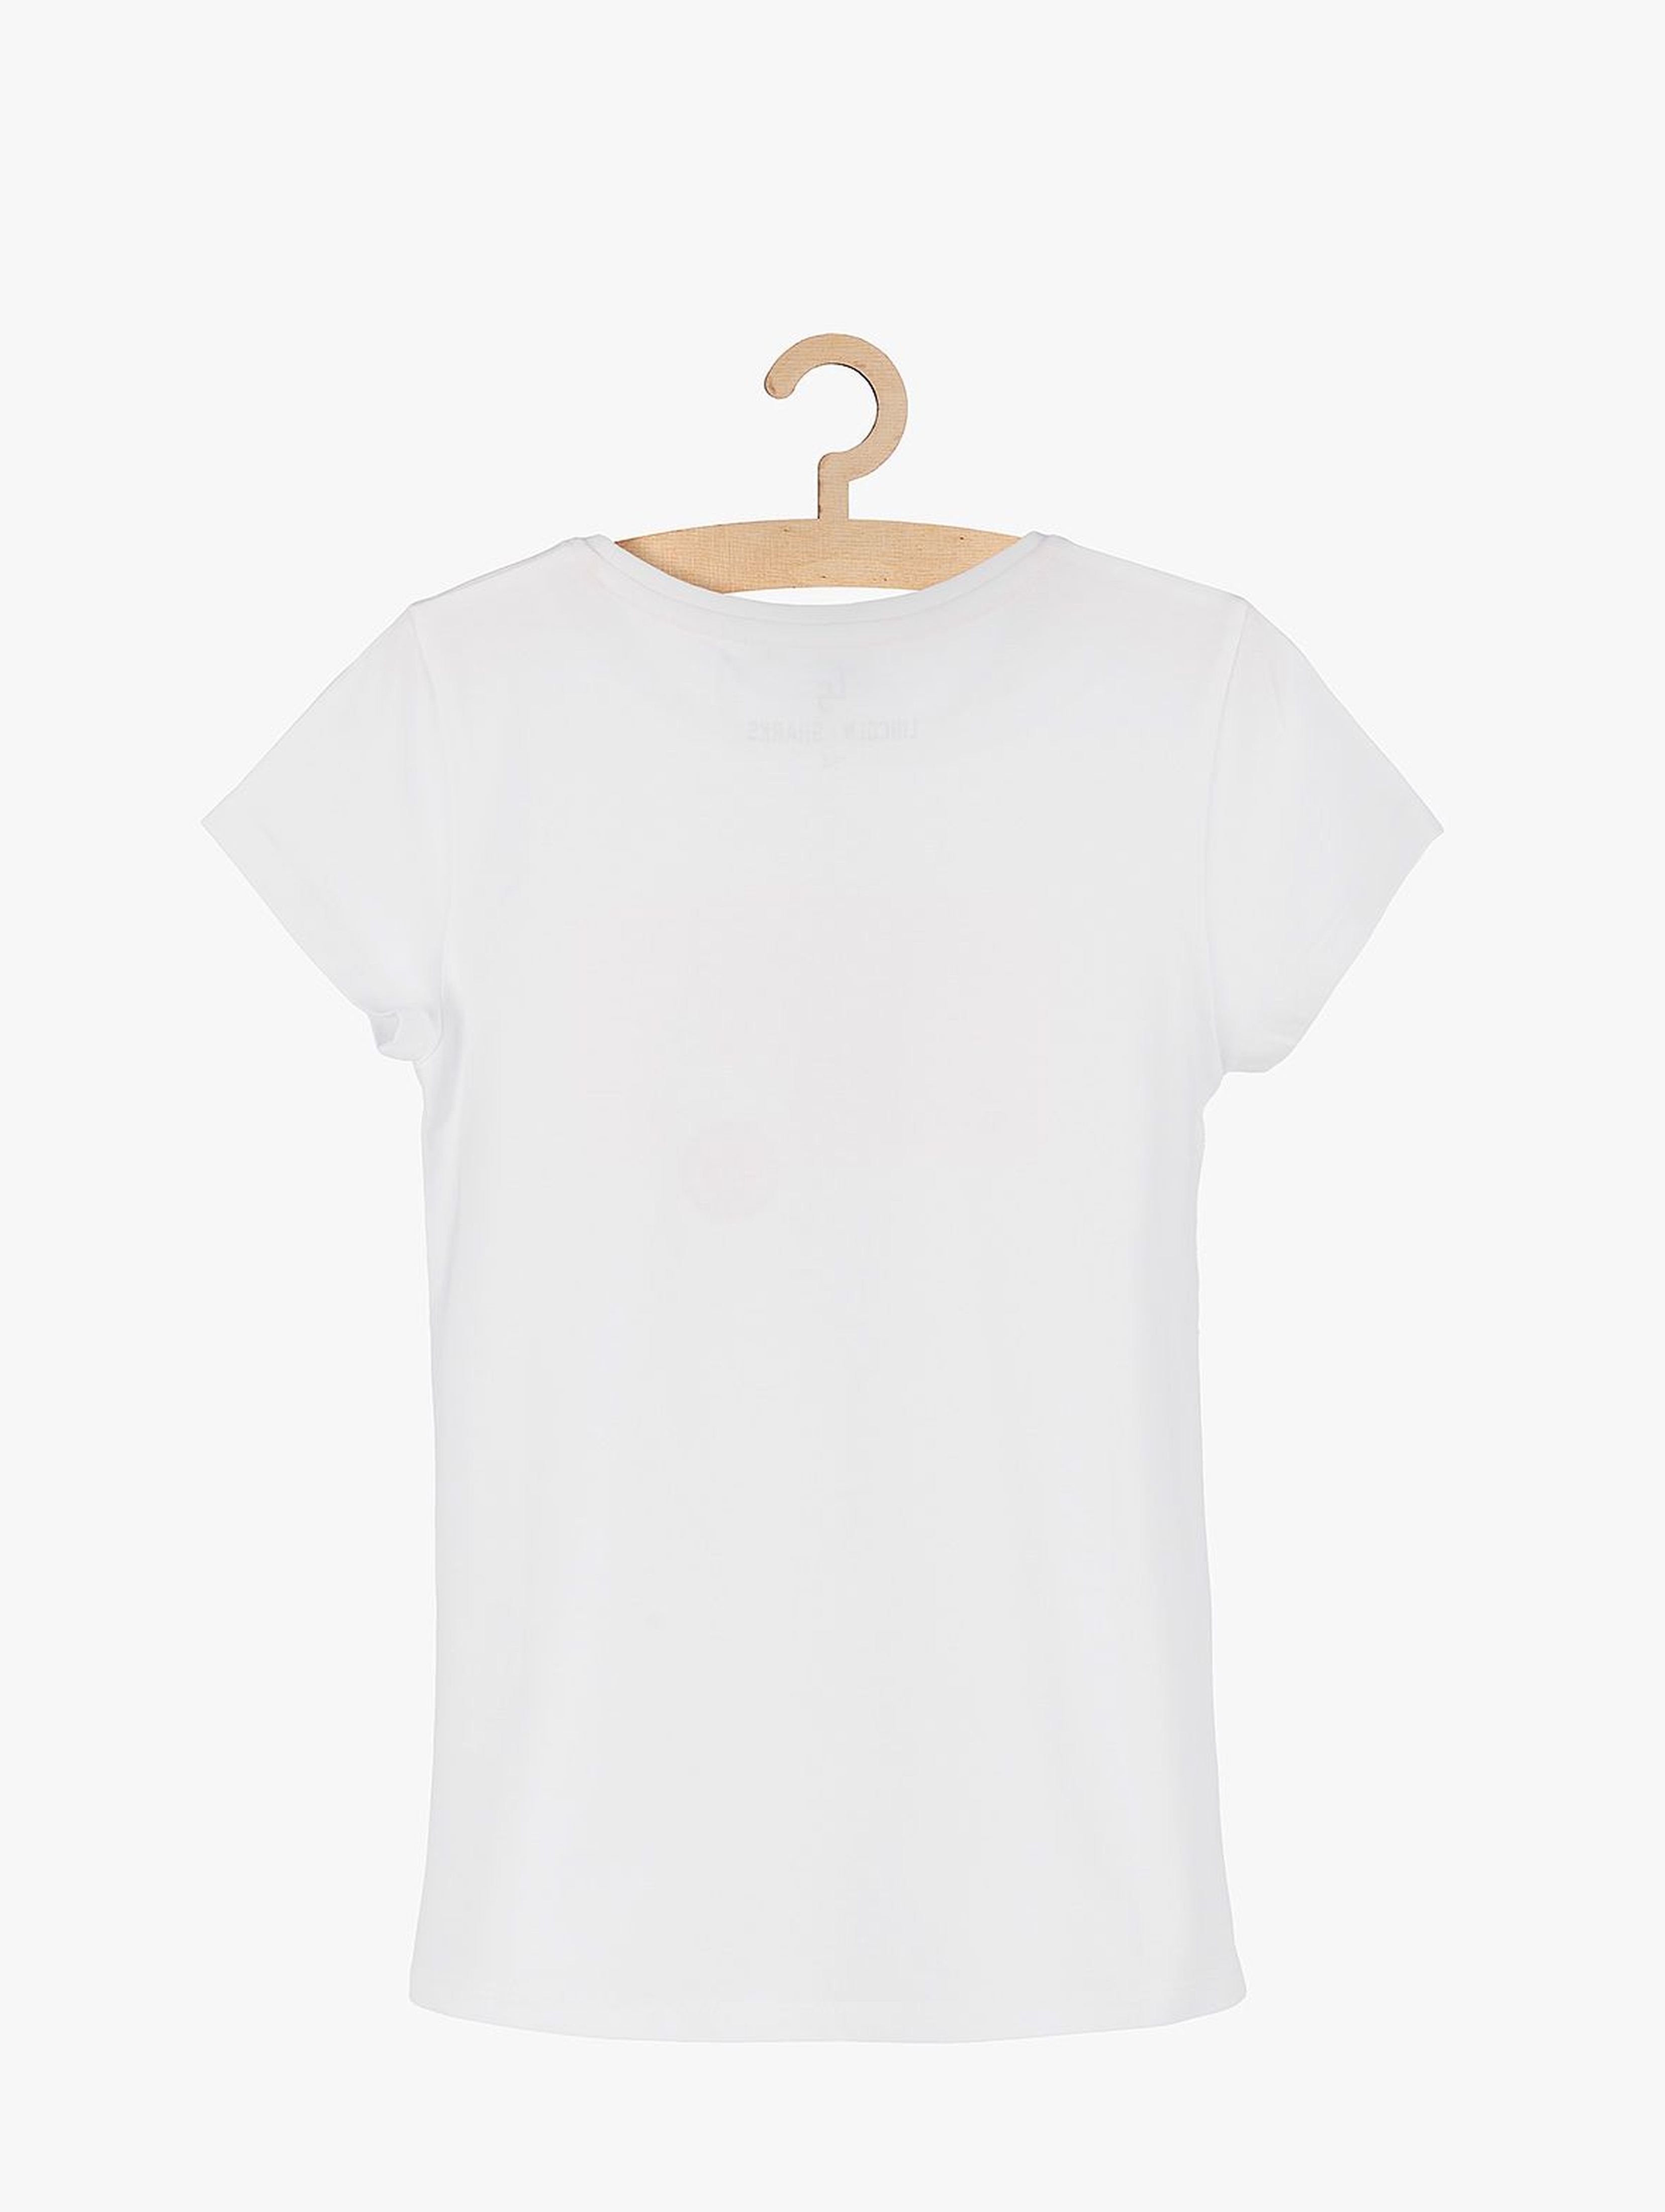 Biały t-shirt z napisem MOVE